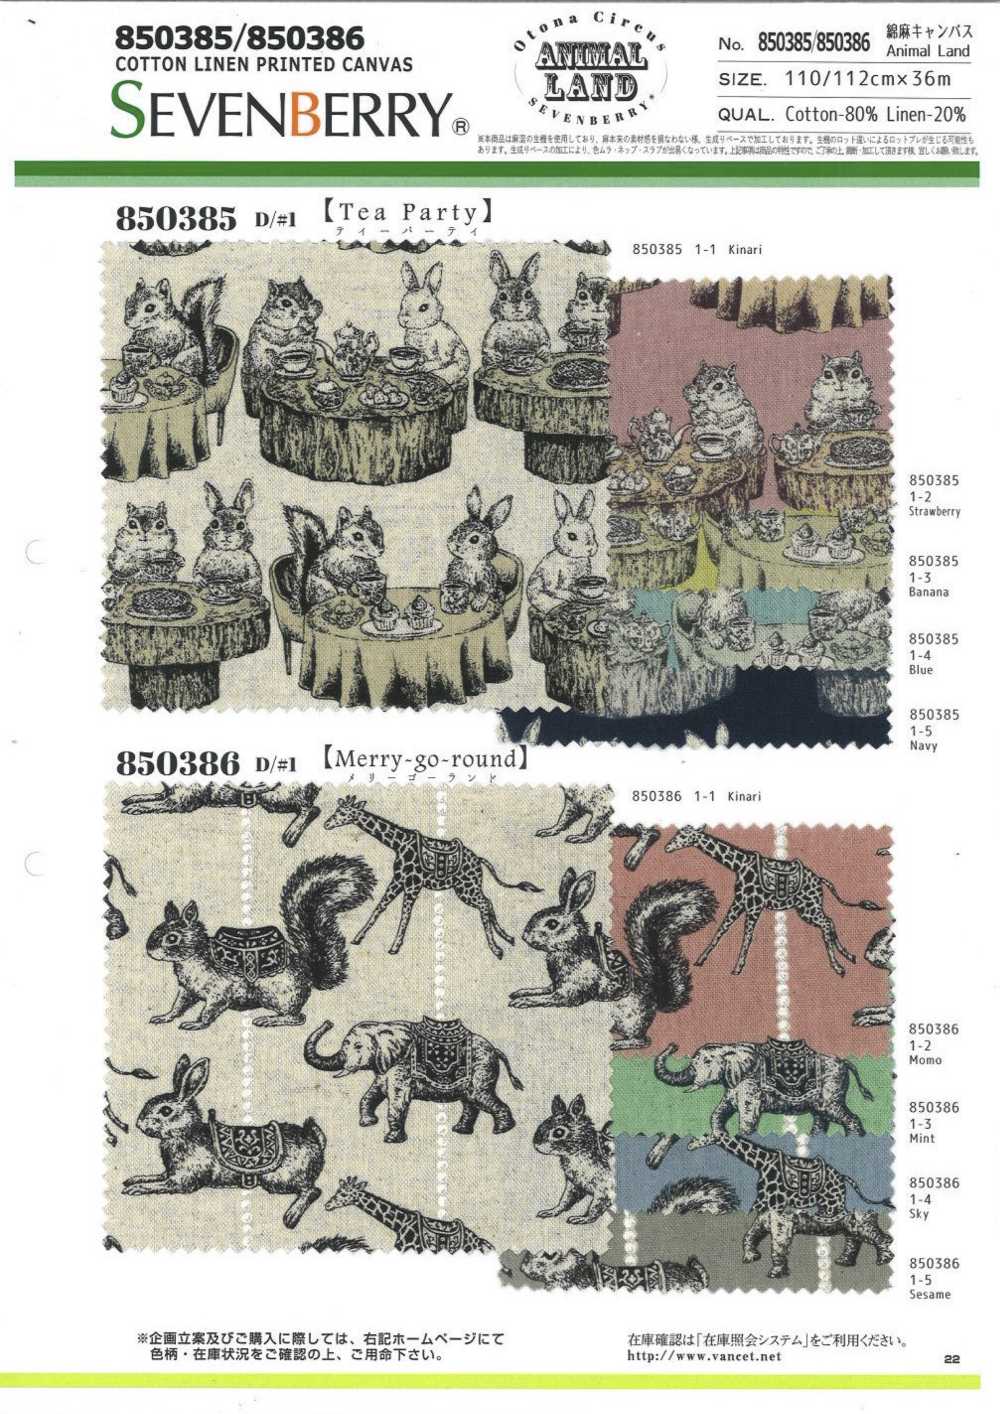 850386 Linho Tela De Linho Animal Land Carrossel[Têxtil / Tecido] VANCET